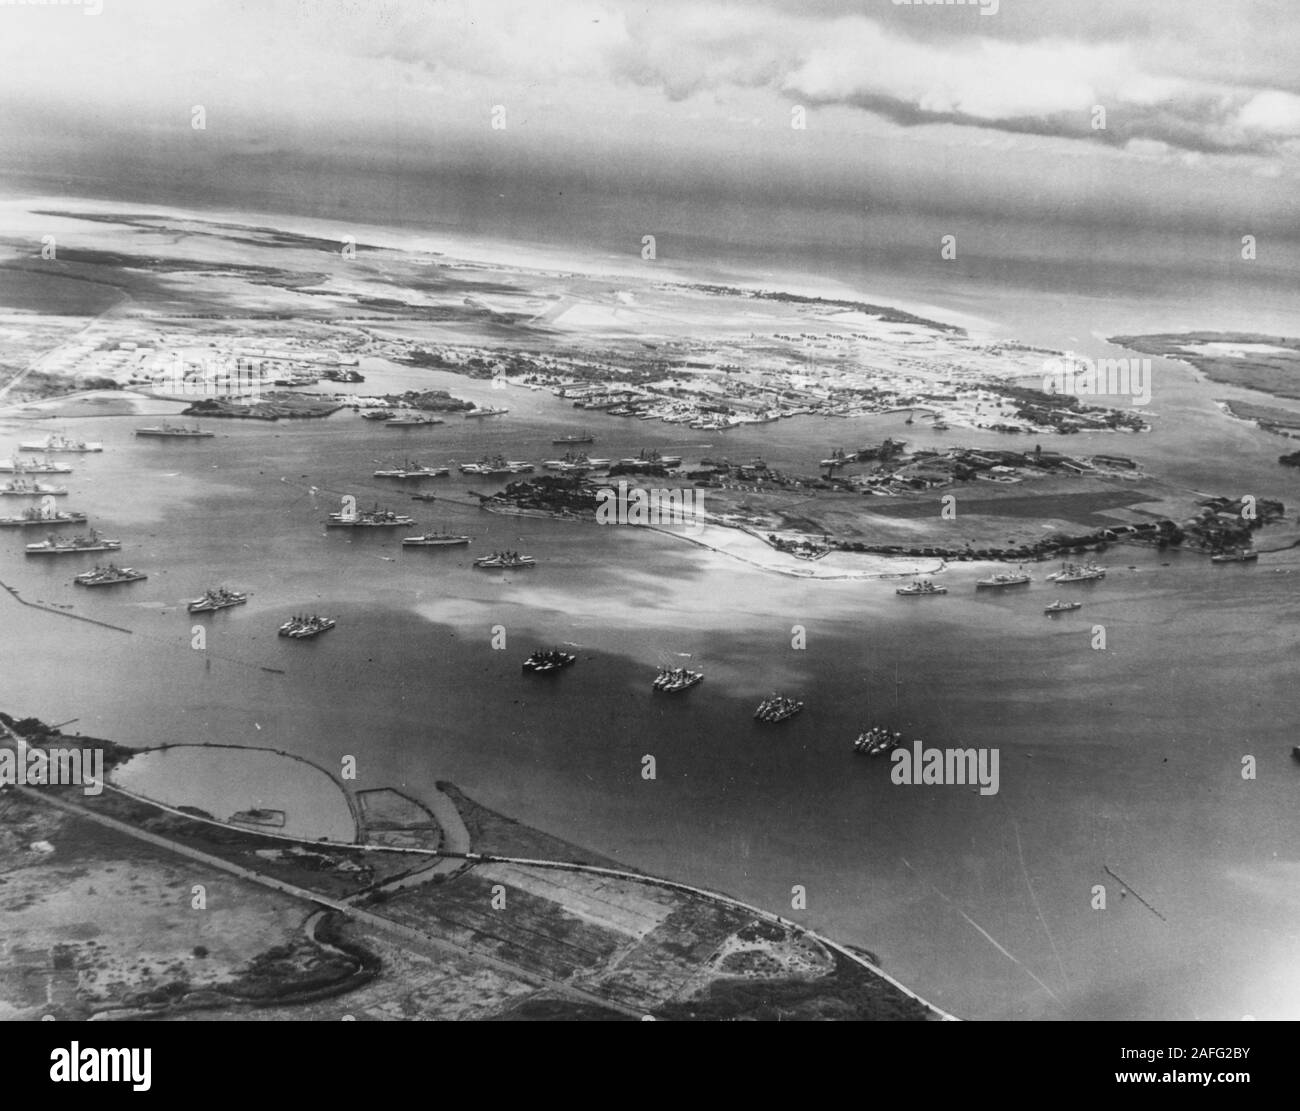 Pearl Harbor - Photographie aérienne de 2500 pieds d'altitude, à au sud, montrant la flotte américaine ancrés dans le port le 3 mai 1940. C'était peu après la conclusion du problème de la flotte XXI et quatre jours avant terme a été reçu que la flotte devait être maintenu dans les eaux hawaiiennes. Il y a huit cuirassés et le transporteur Yorktown (CV-5) attaché par l'île de Ford, dans le centre du port. Deux autres cuirassés et beaucoup de croiseurs, de destroyers et d'autres navires de la Marine également présents, la plupart d'entre eux dans la groupes du Loch, à l'avant-plan. Quelques-unes des destroyers sont port sombre expérimental Banque D'Images